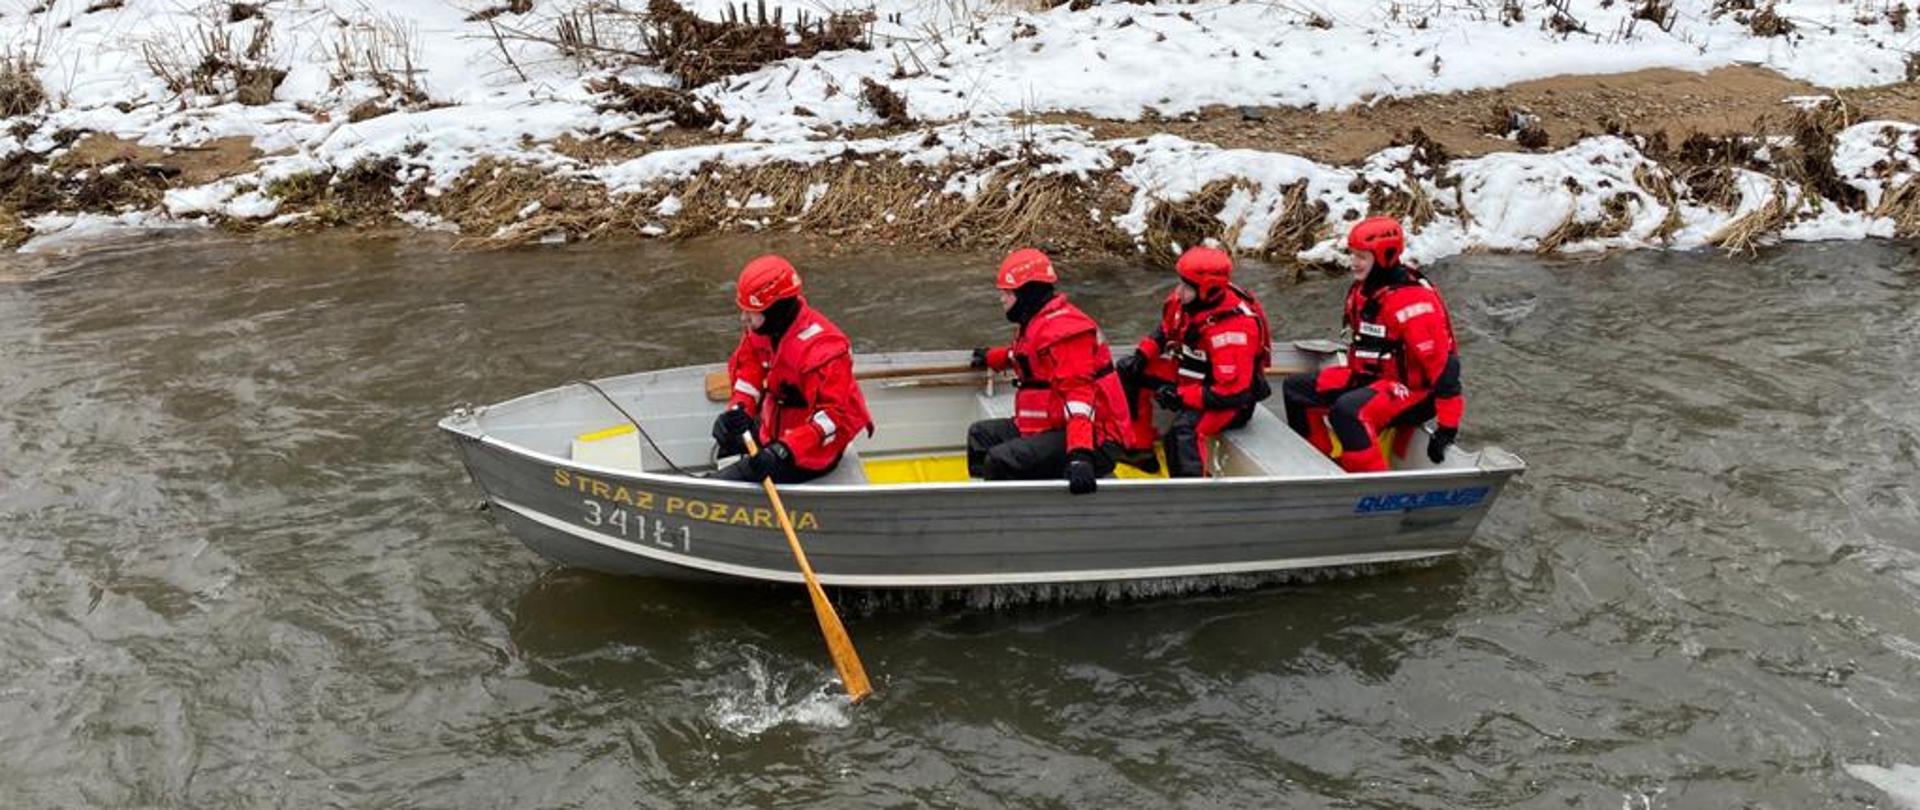 Zdjęcie przedstawia strażaków płynących łódką po rzecze. Strażacy ubrani są w czerwone skafandry oraz czerwone kaski. W łódce znajduje się czterech strażaków. Pierwszy z nich ma wiosło.